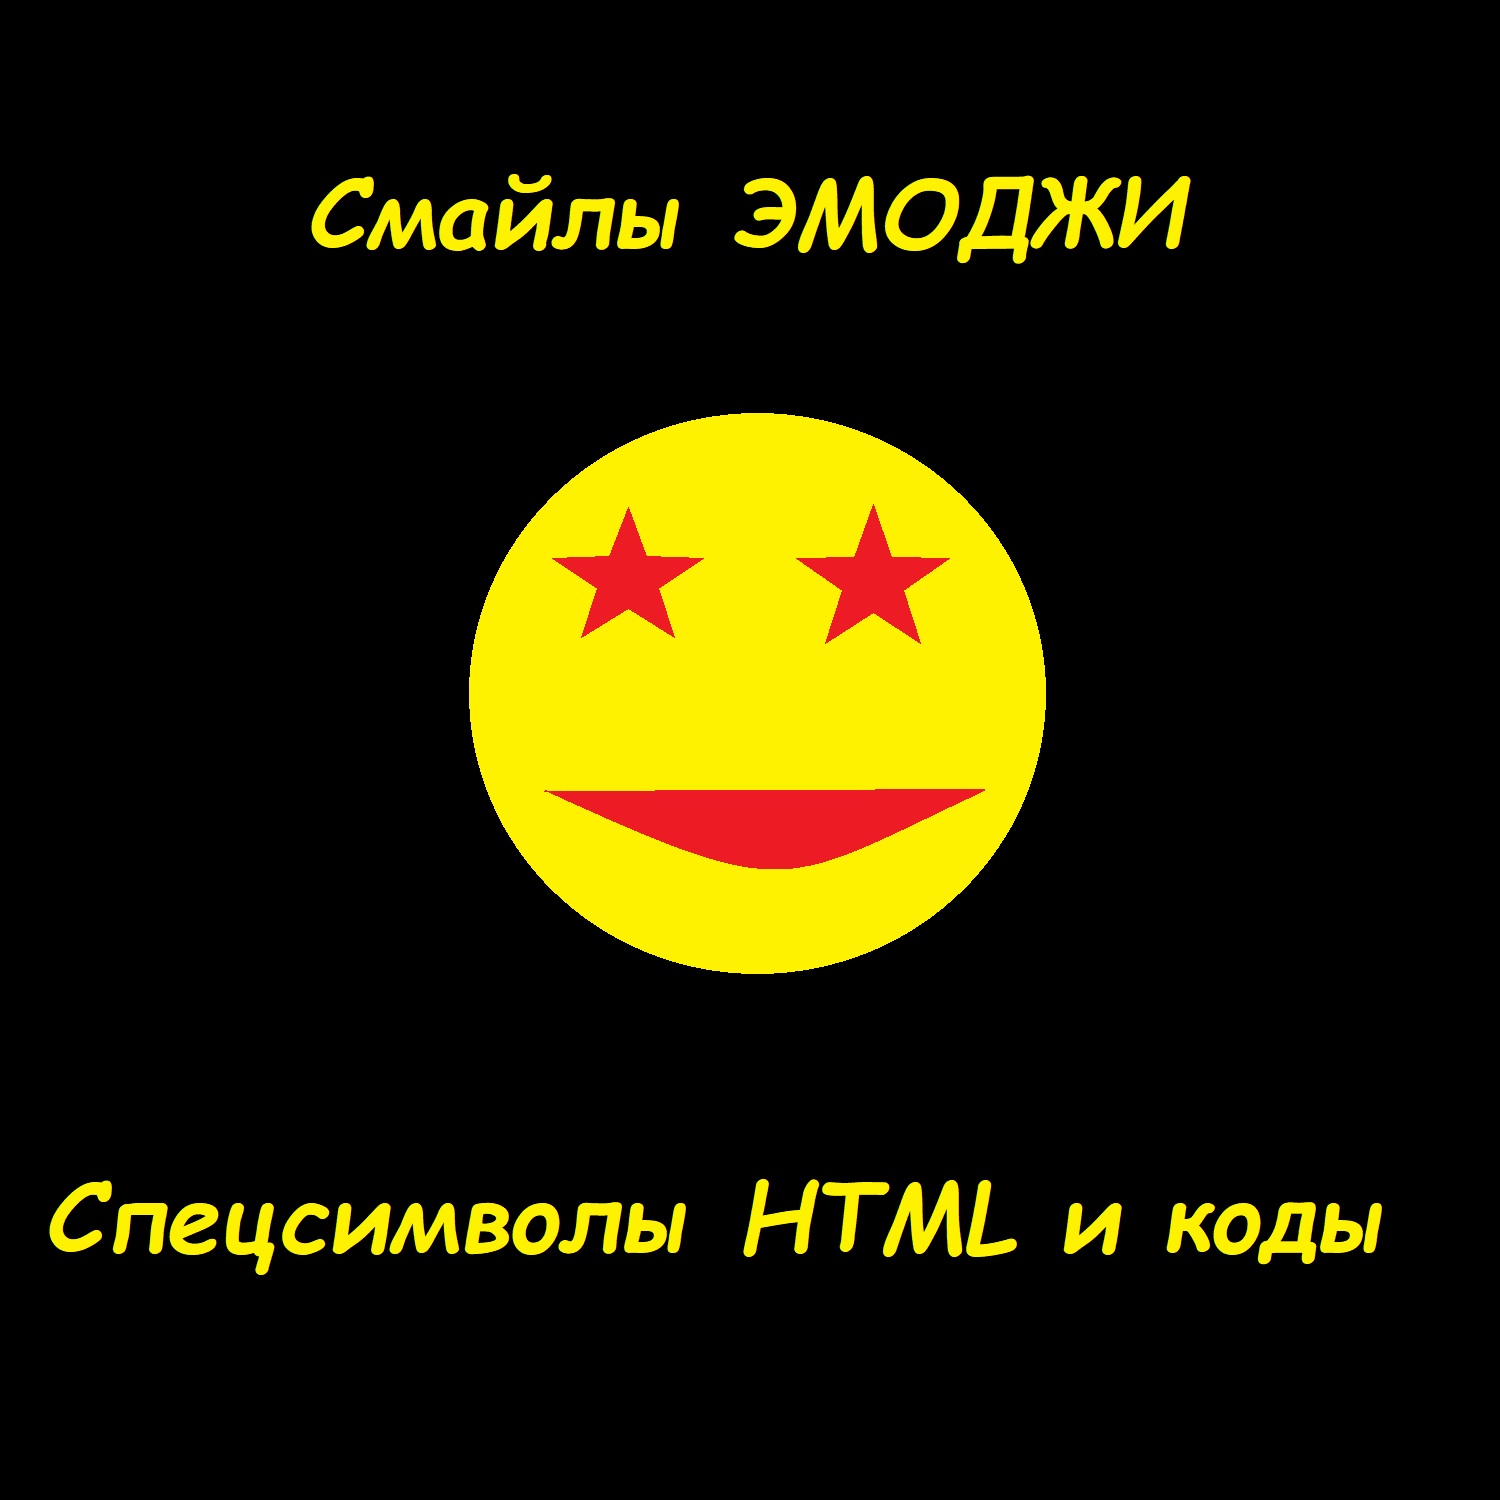 Смайлы эмоджи и спецсимволы HTML